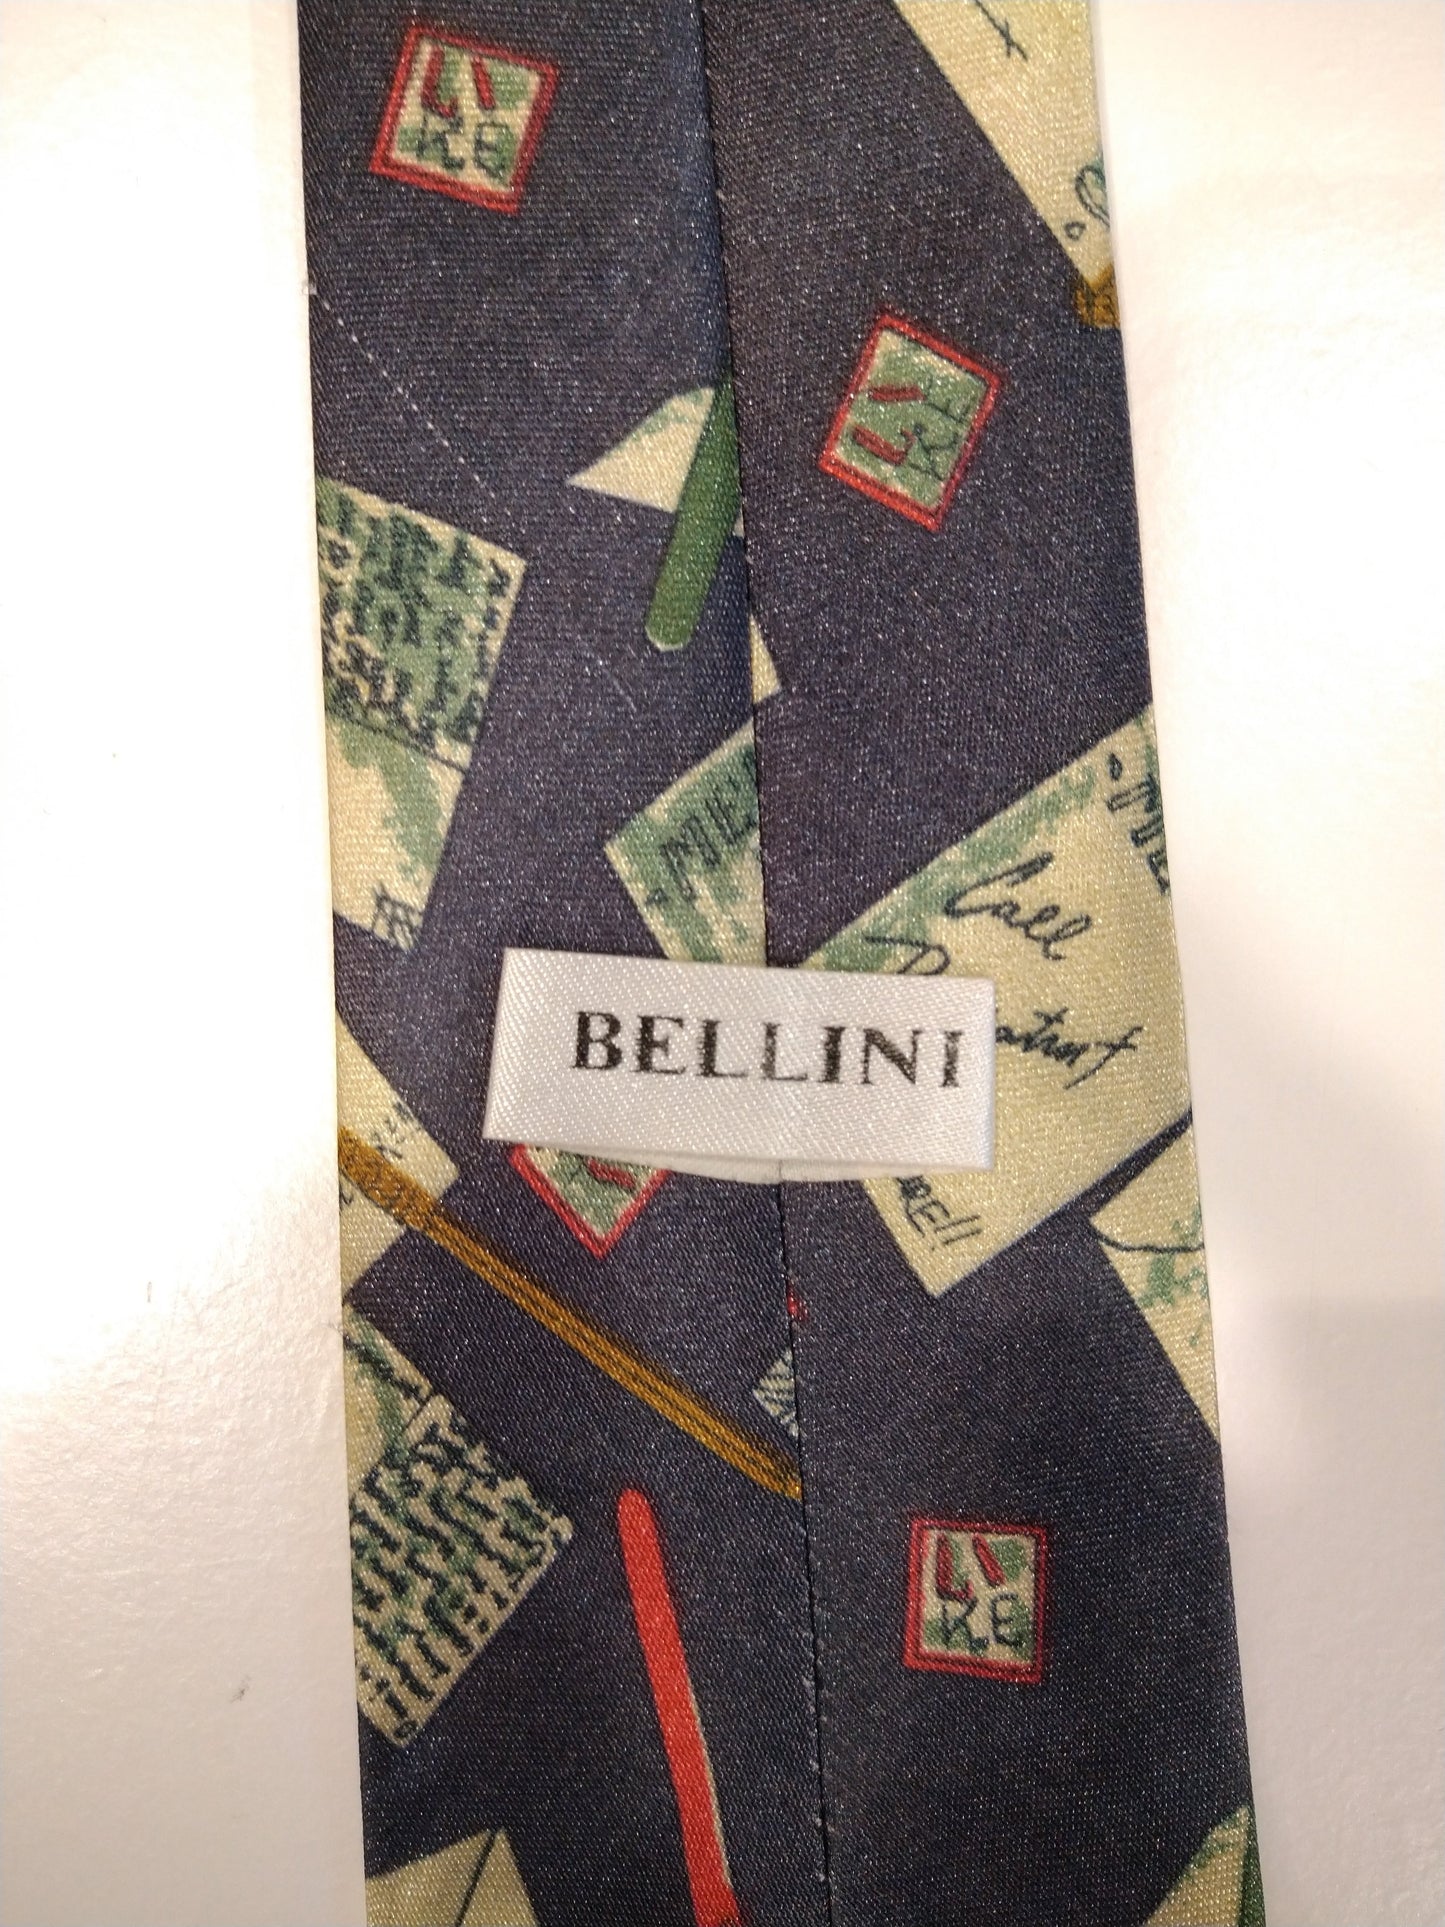 Cravate Bellini Polyester. Motif coloré.